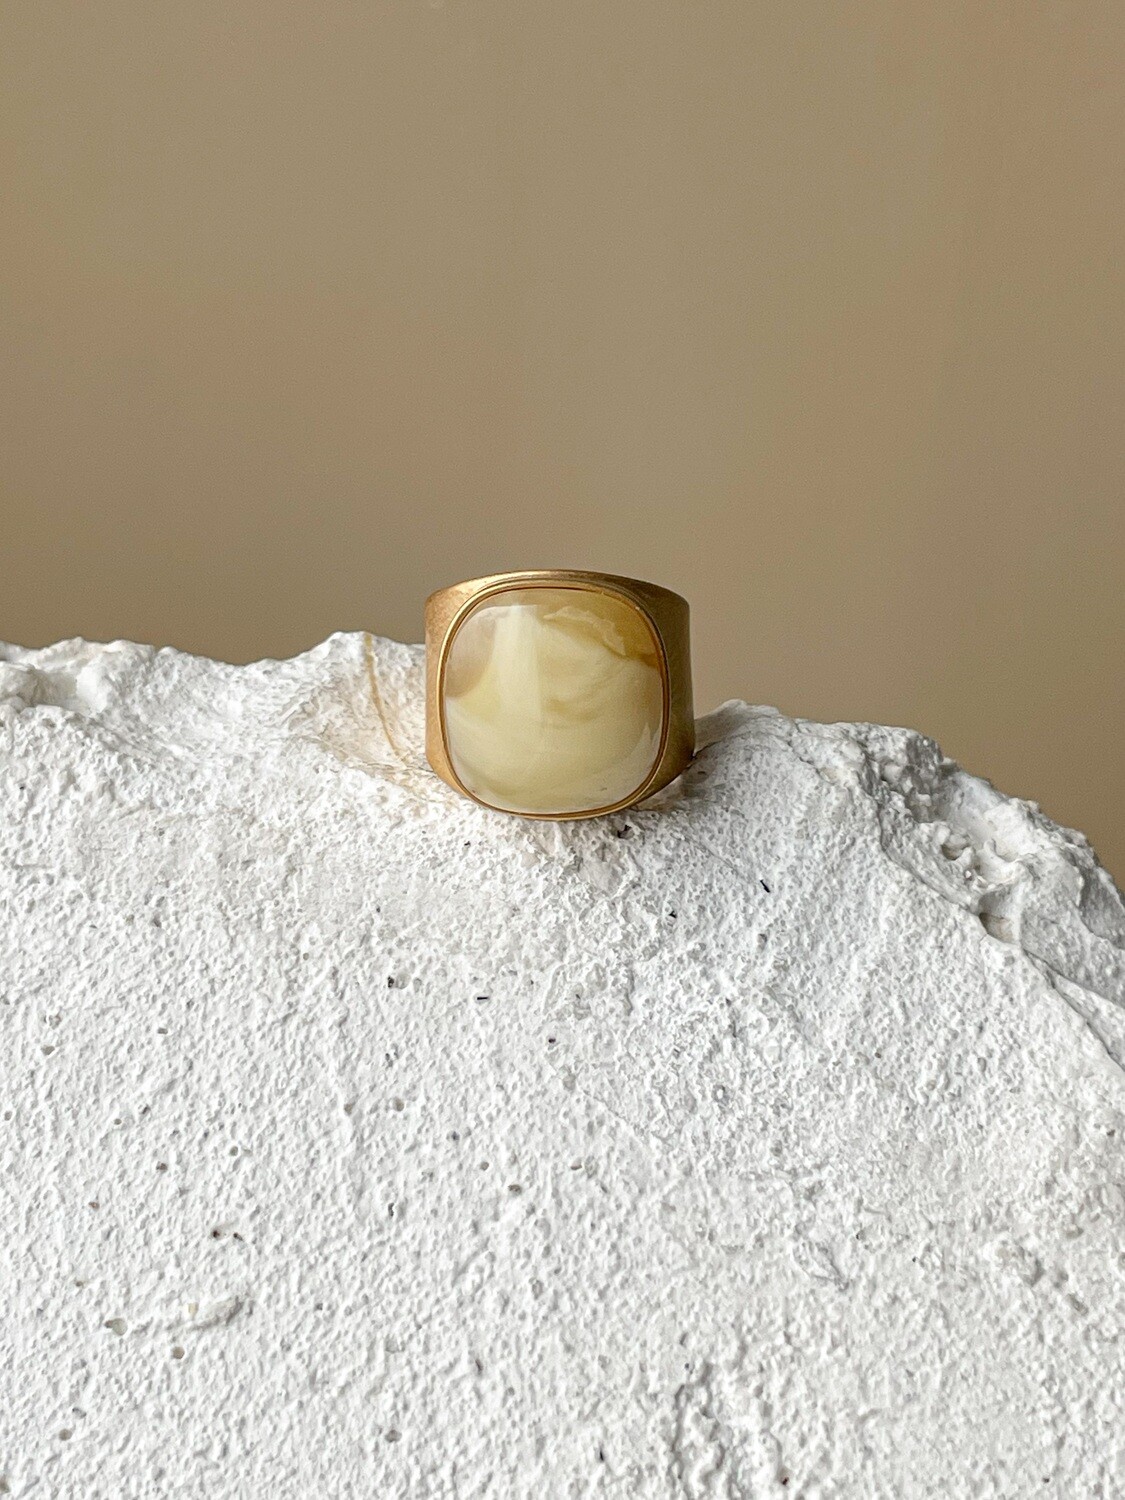 Широкое кольцо с медовым янтарем, размер 16,5